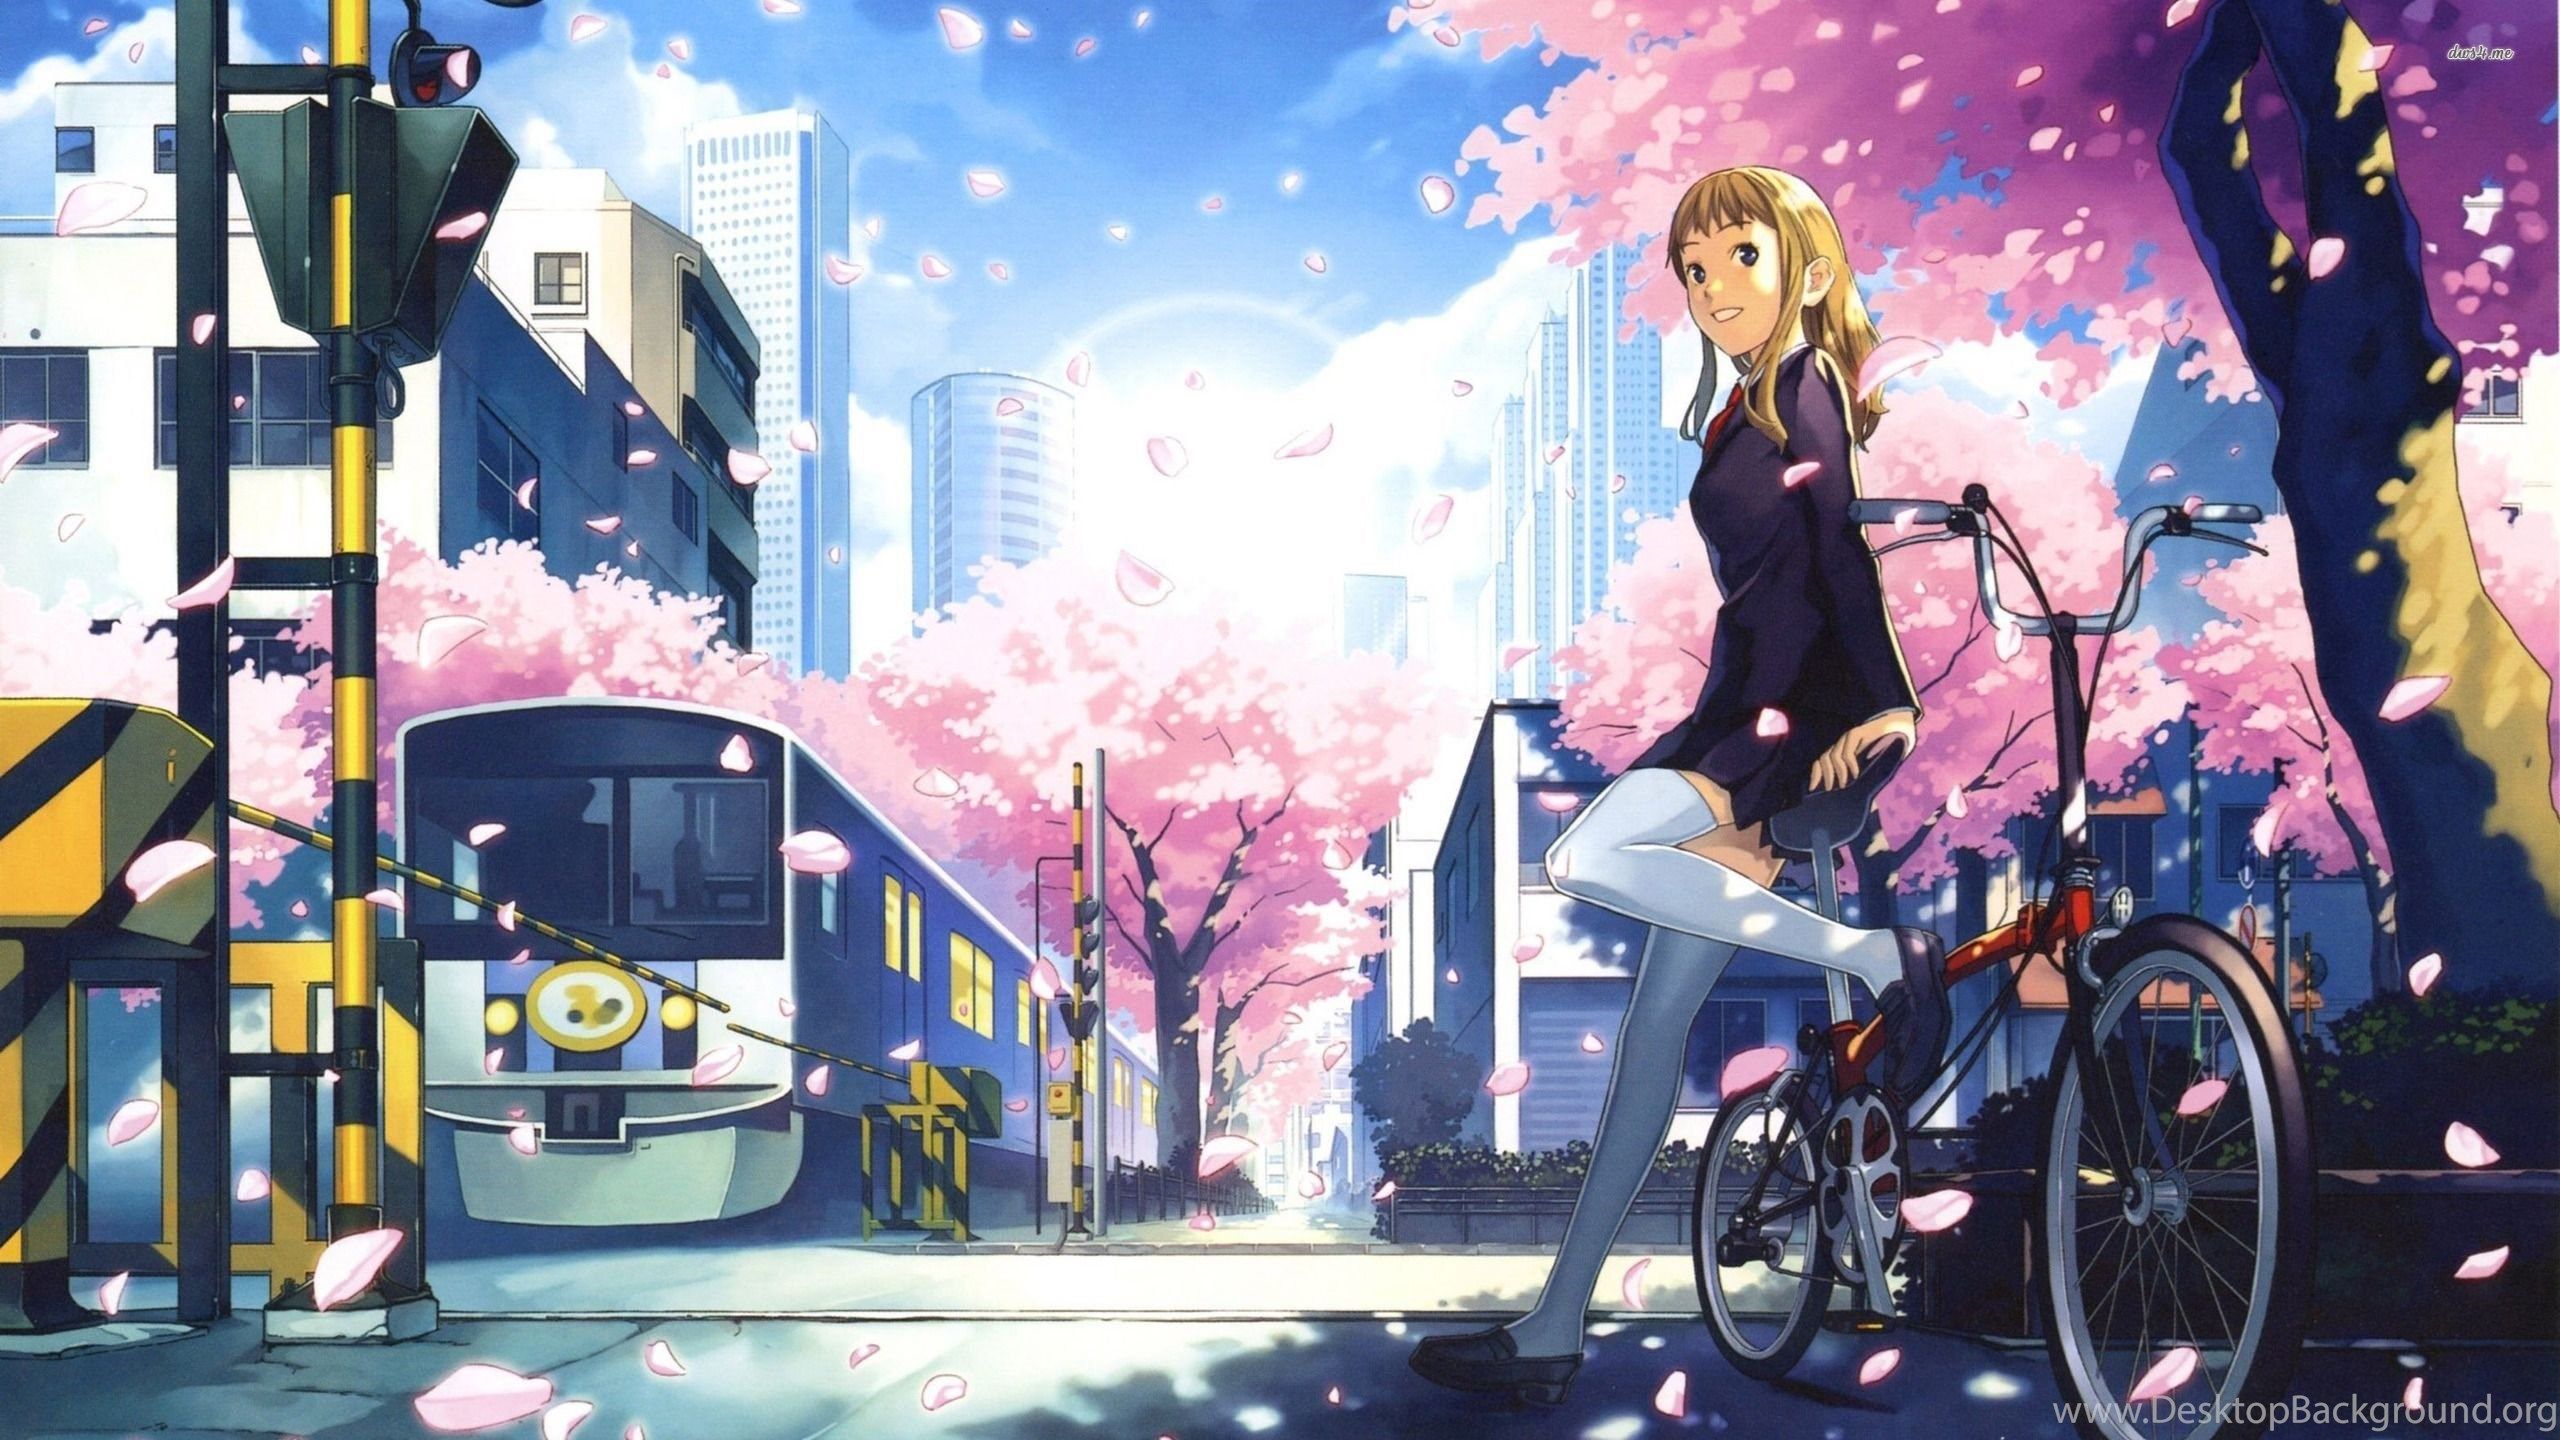 Schoolgirl On Her Bike Wallpaper Anime .desktopbackground.org